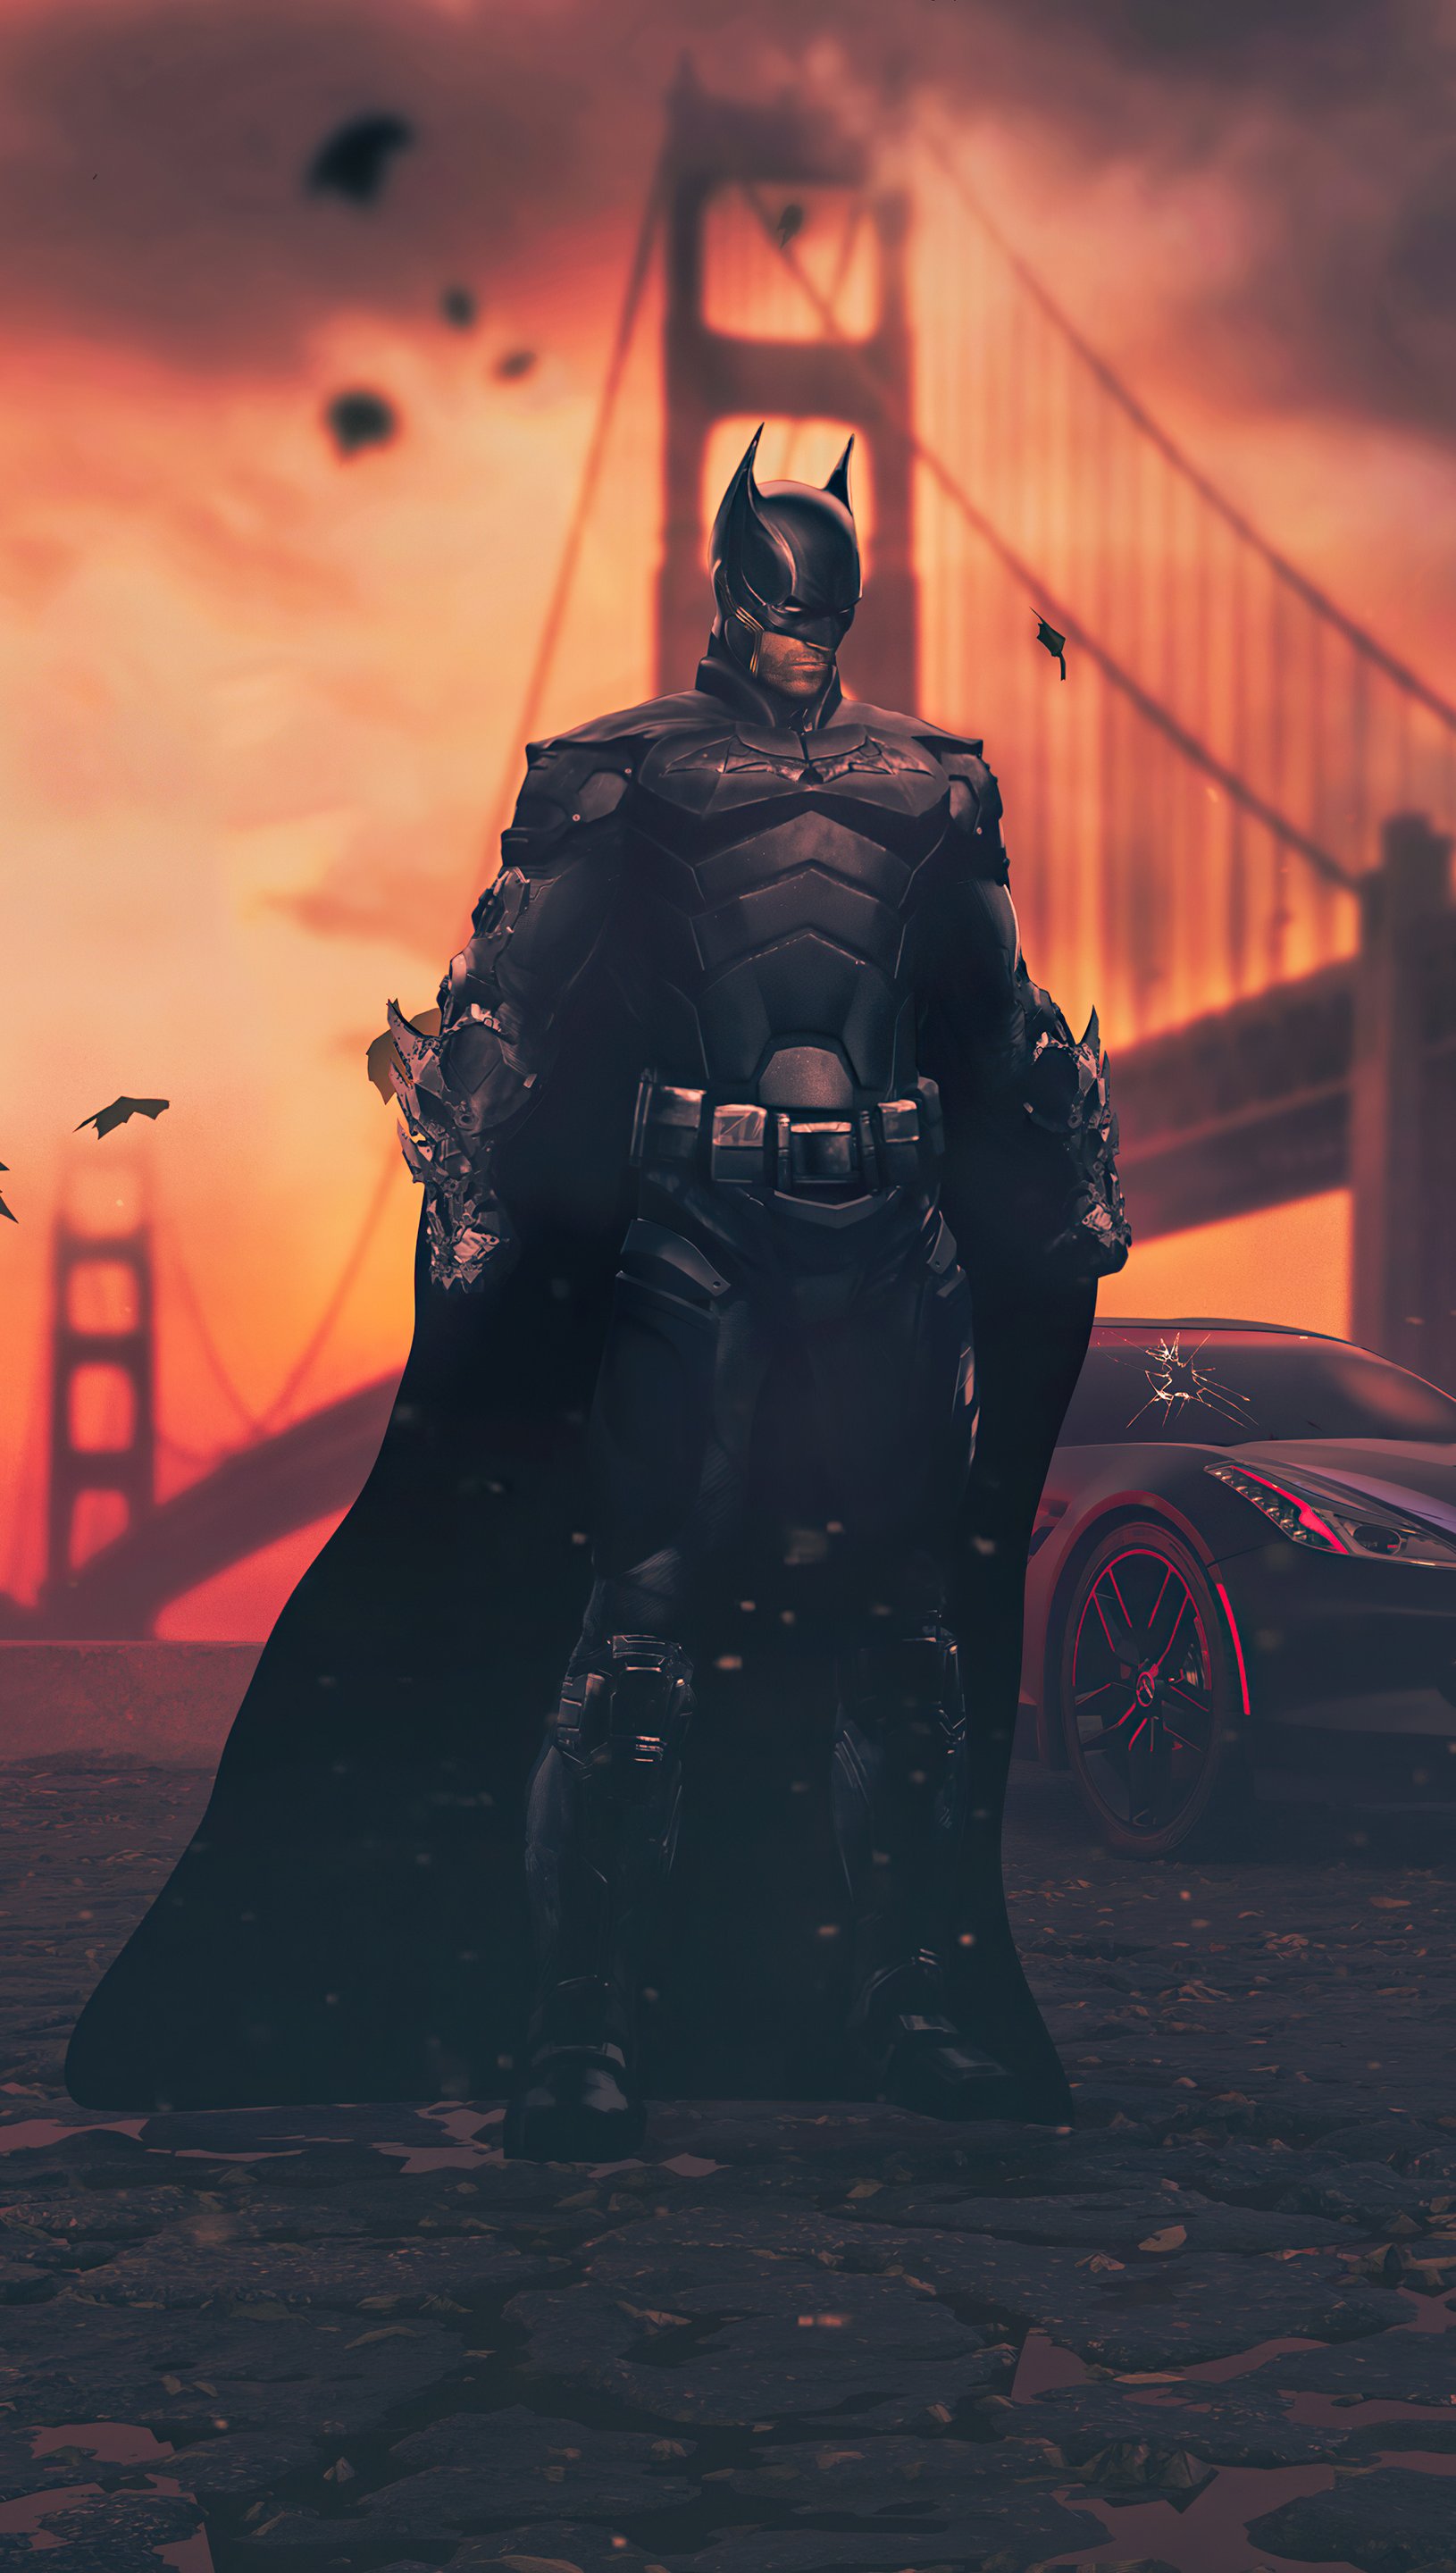 Batman Legend of the dark knight Wallpaper 5k Ultra HD ID:9934